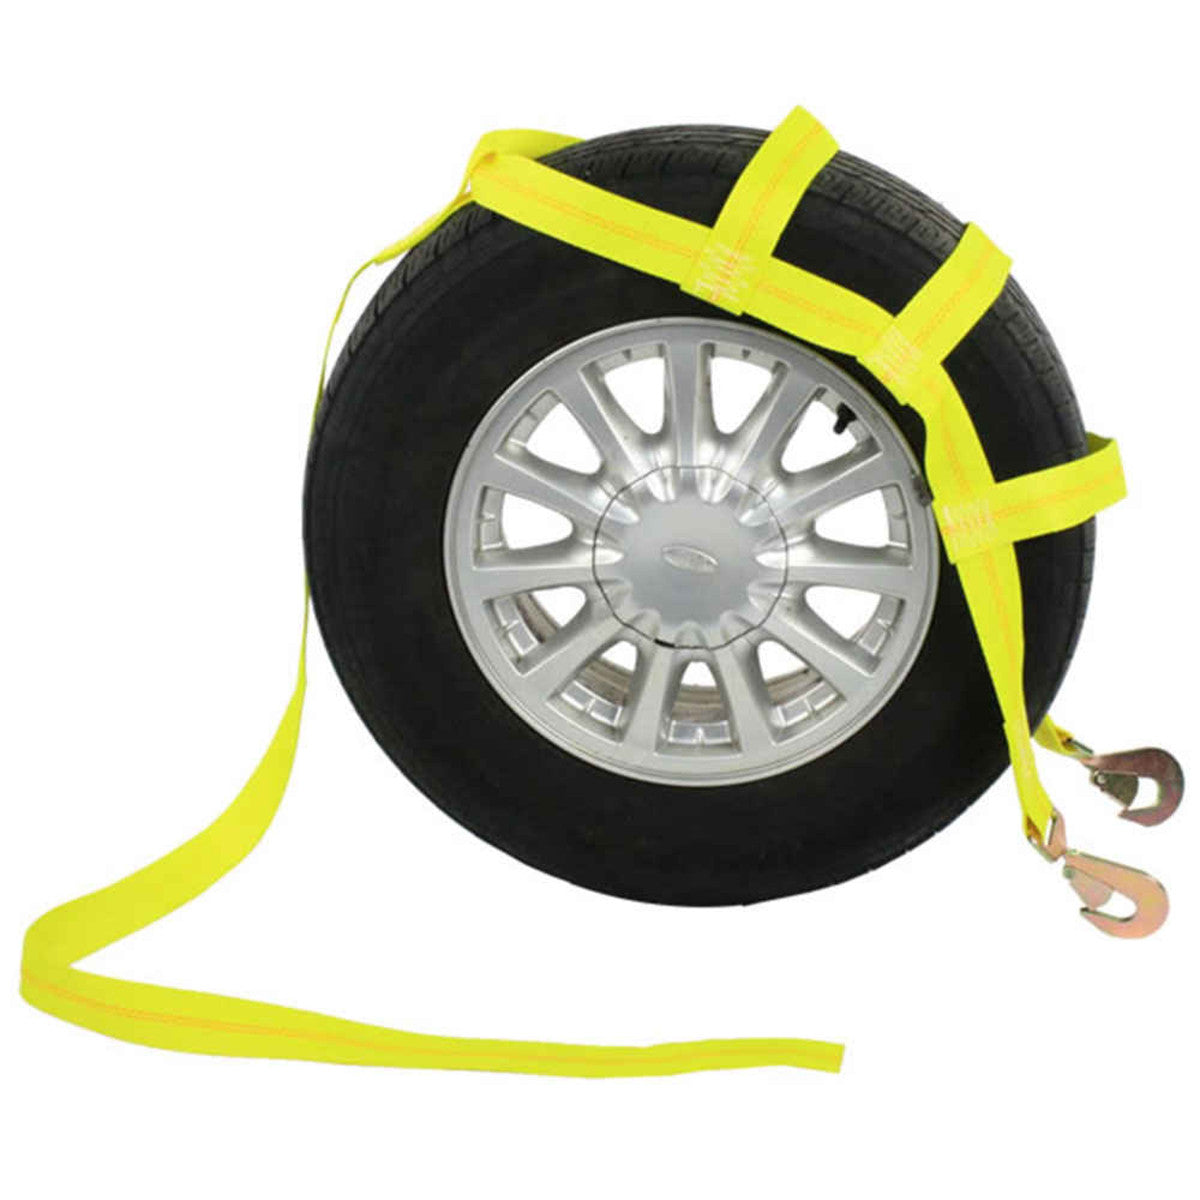 Heavy Duty Car Tire Tow Dolly Straps Basket Strap Adjustable Wheel Net Flat  Hook